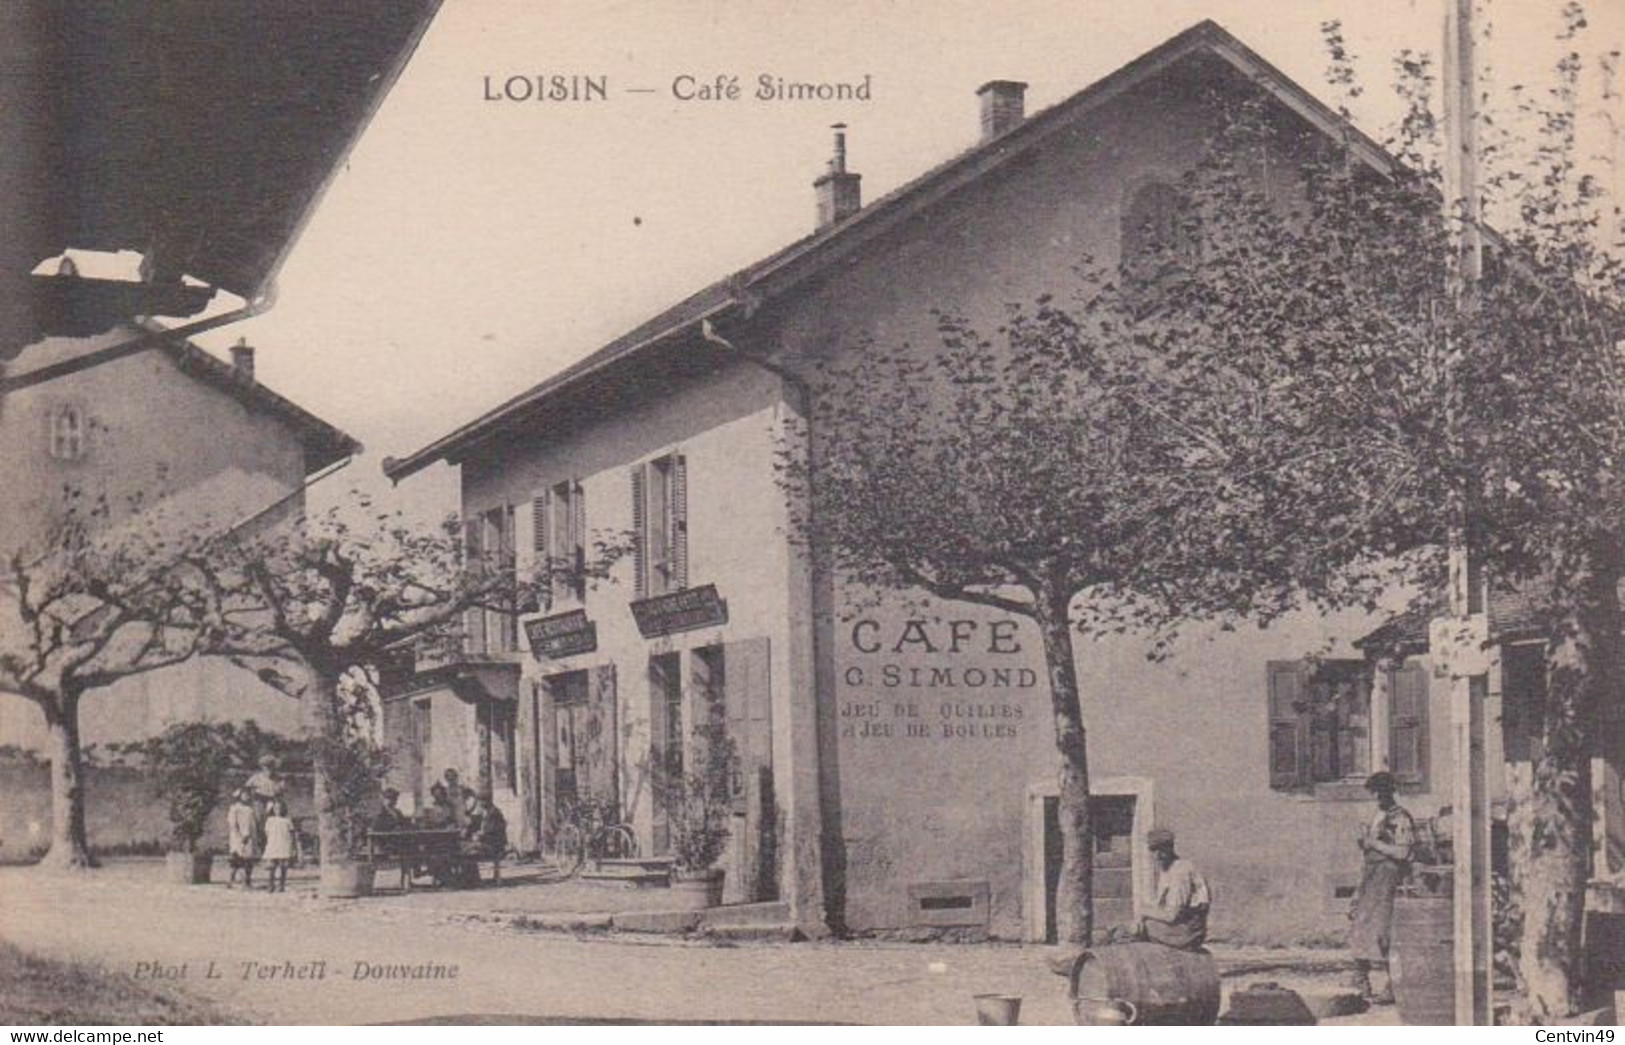 Carte Postale De France - Haute-Savoie (74) - Loisin, Café Simond - Dos Vert Non écrite - Douvaine